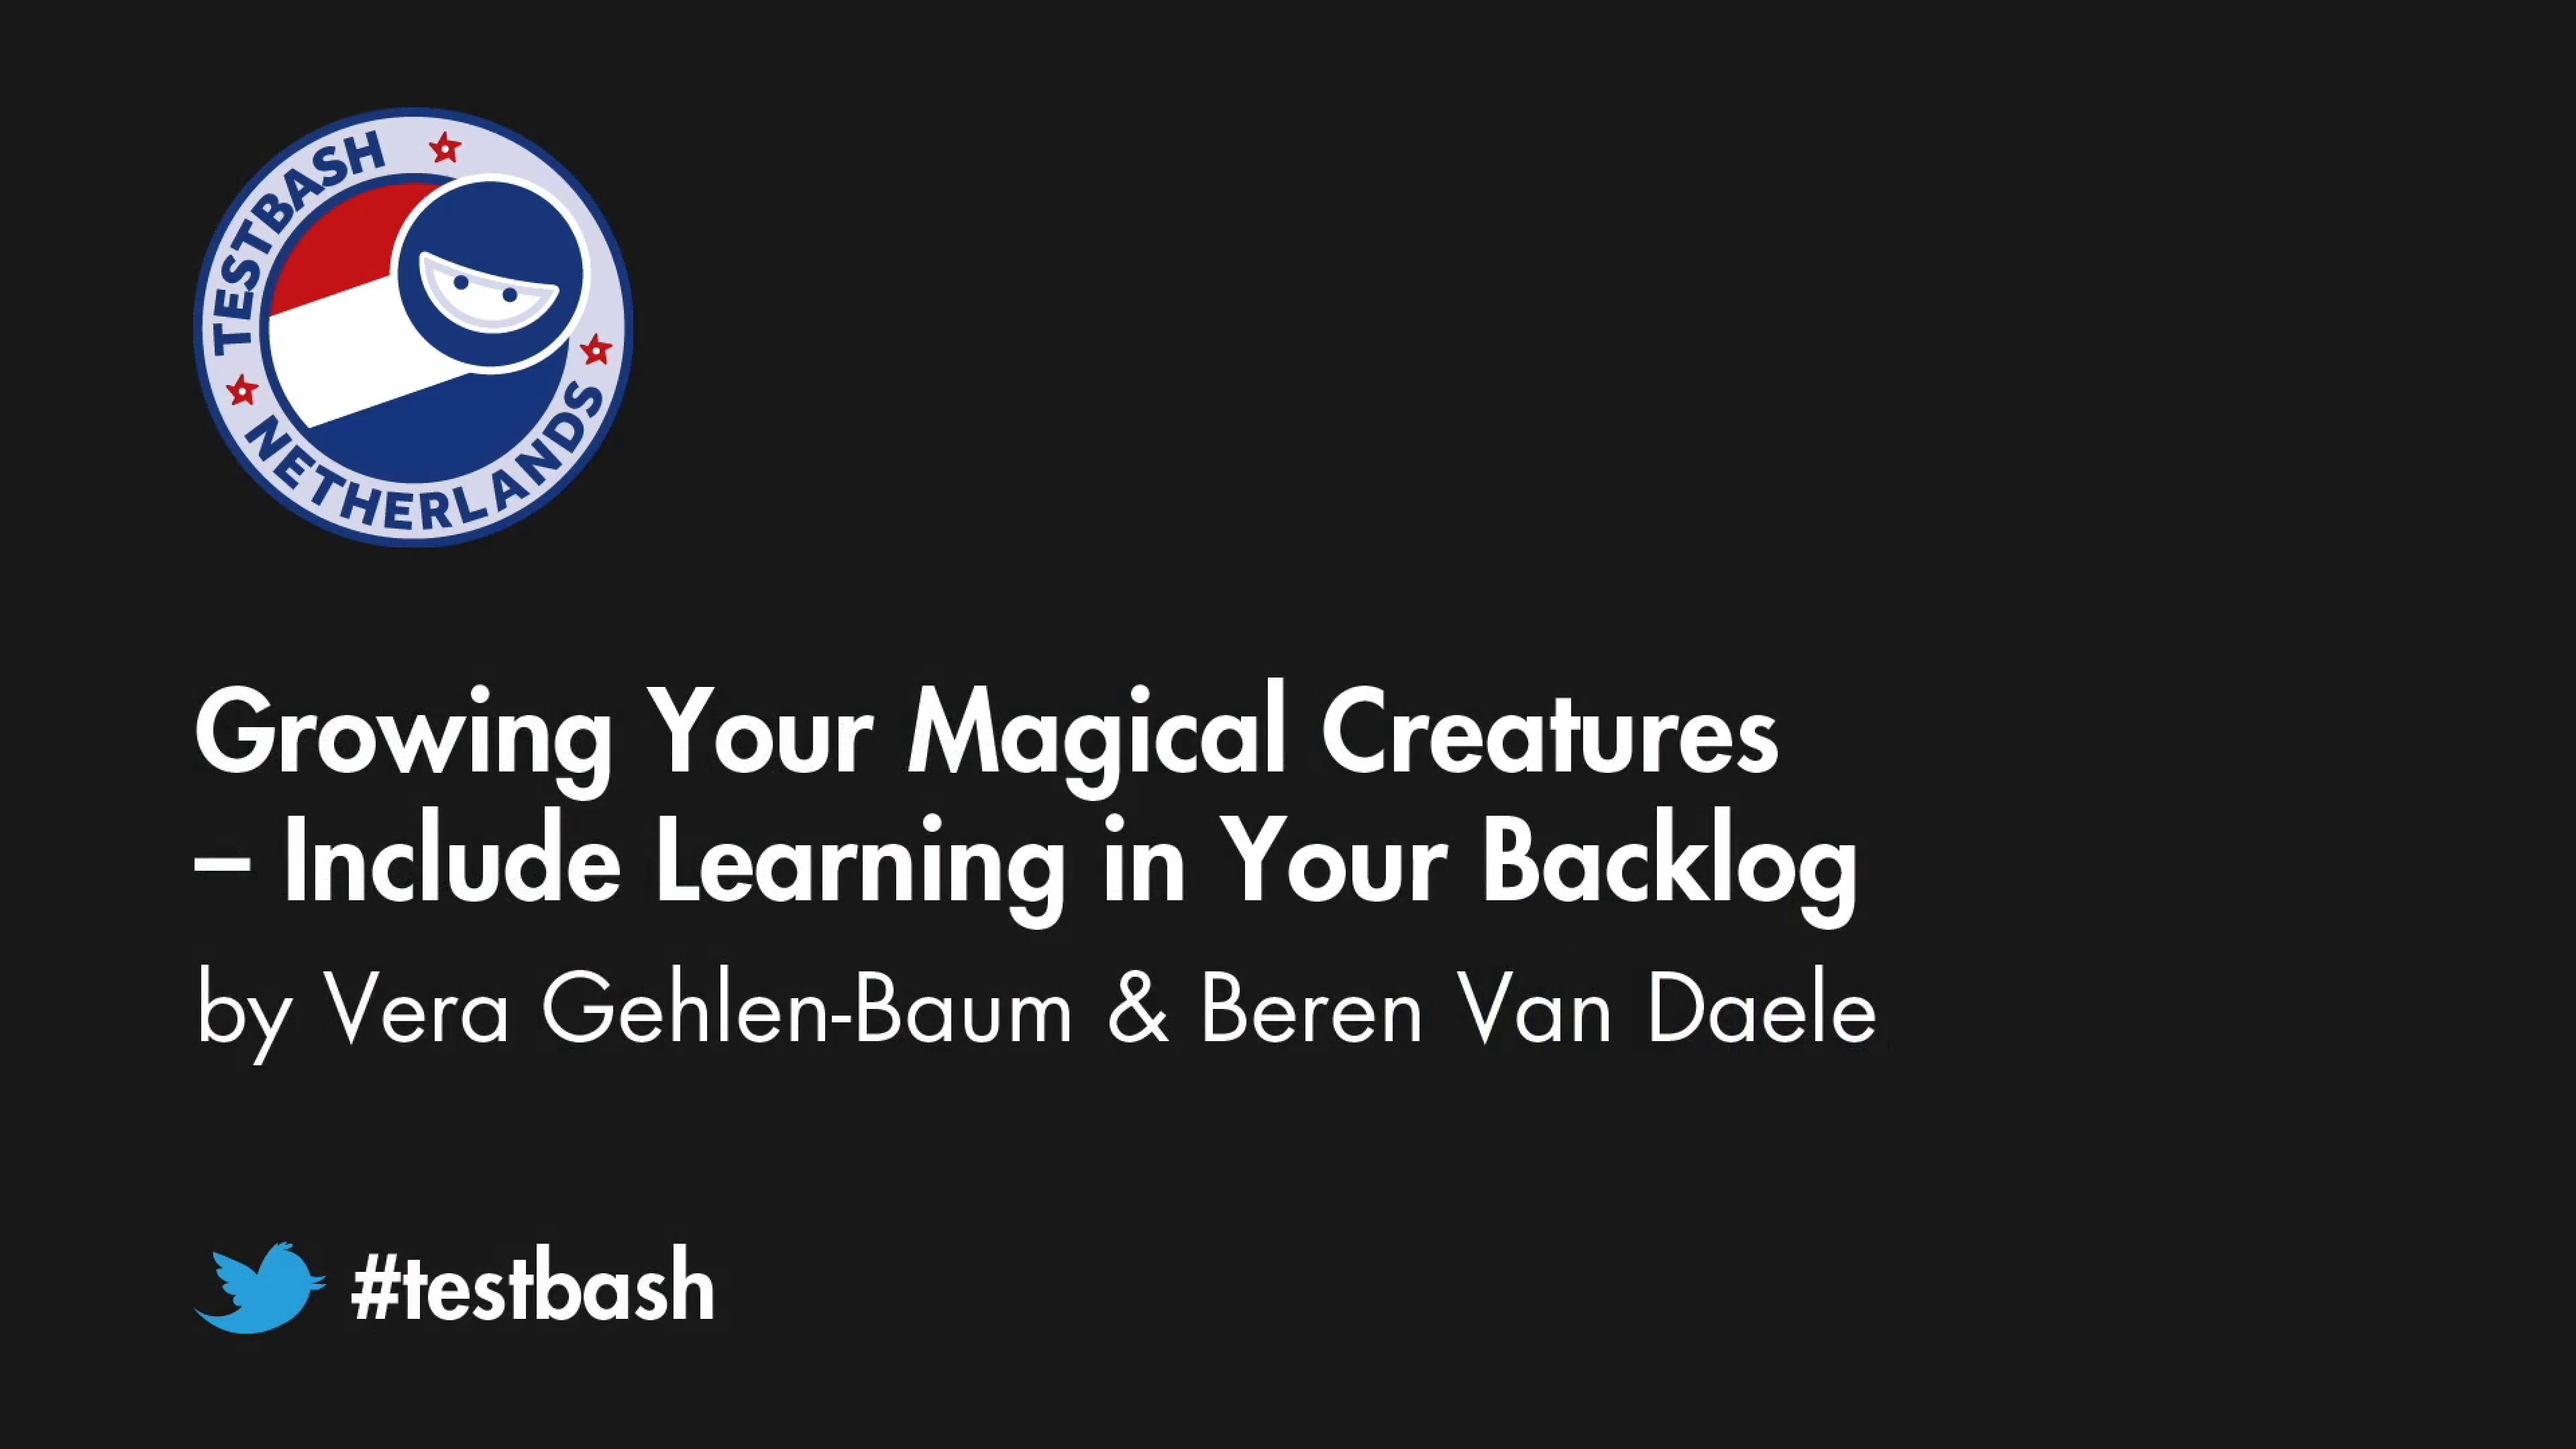 Growing Your Magical Creatures - Vera Gehlen-Baum & Beren van Daele